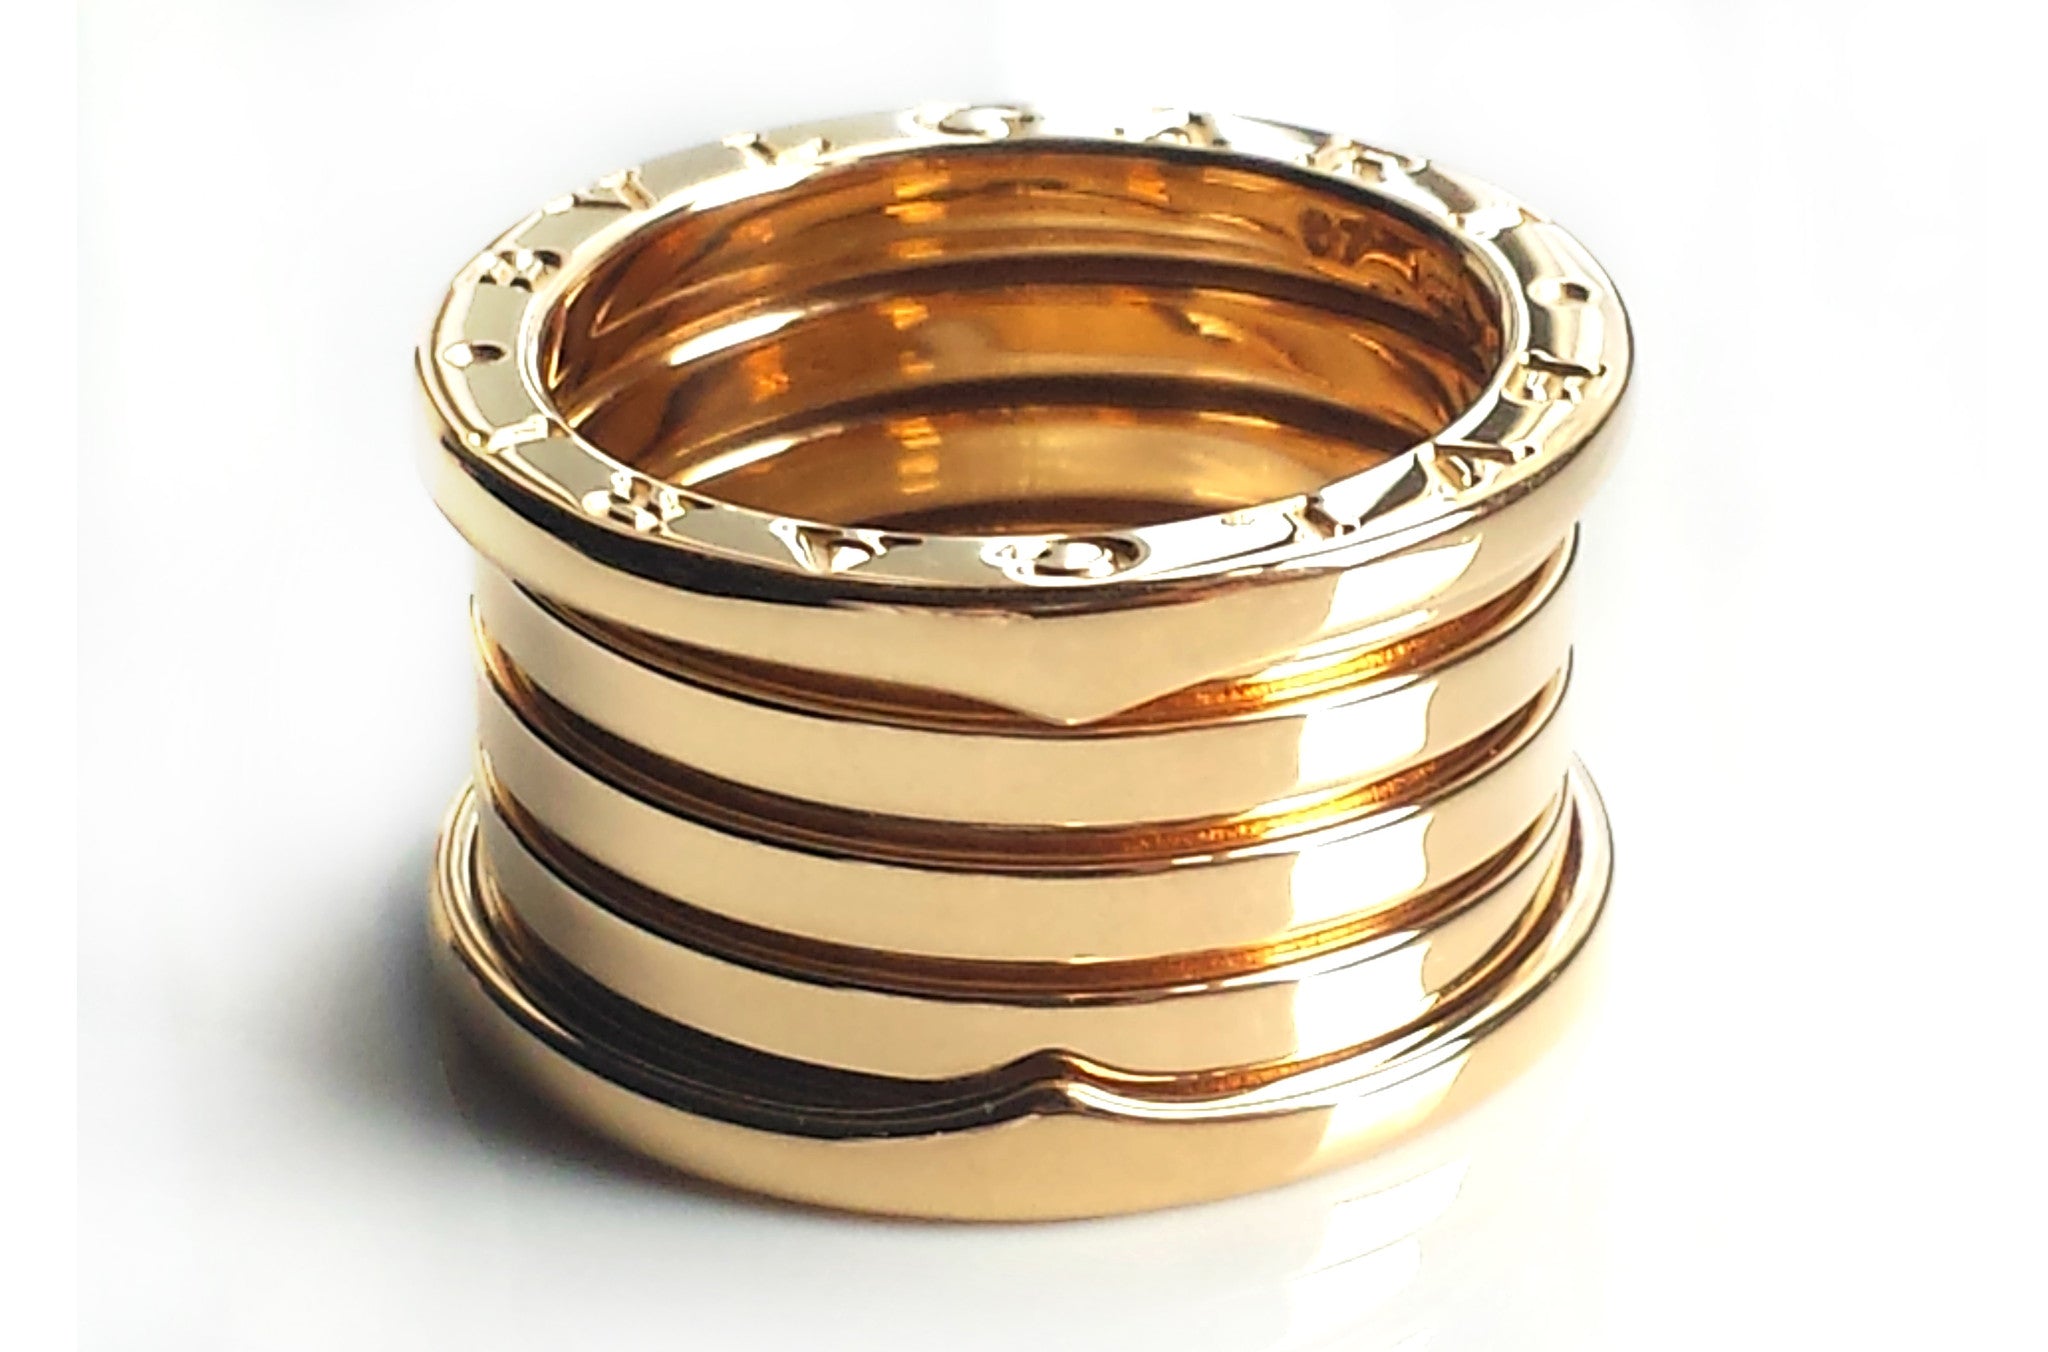 bvlgari 5 band gold ring